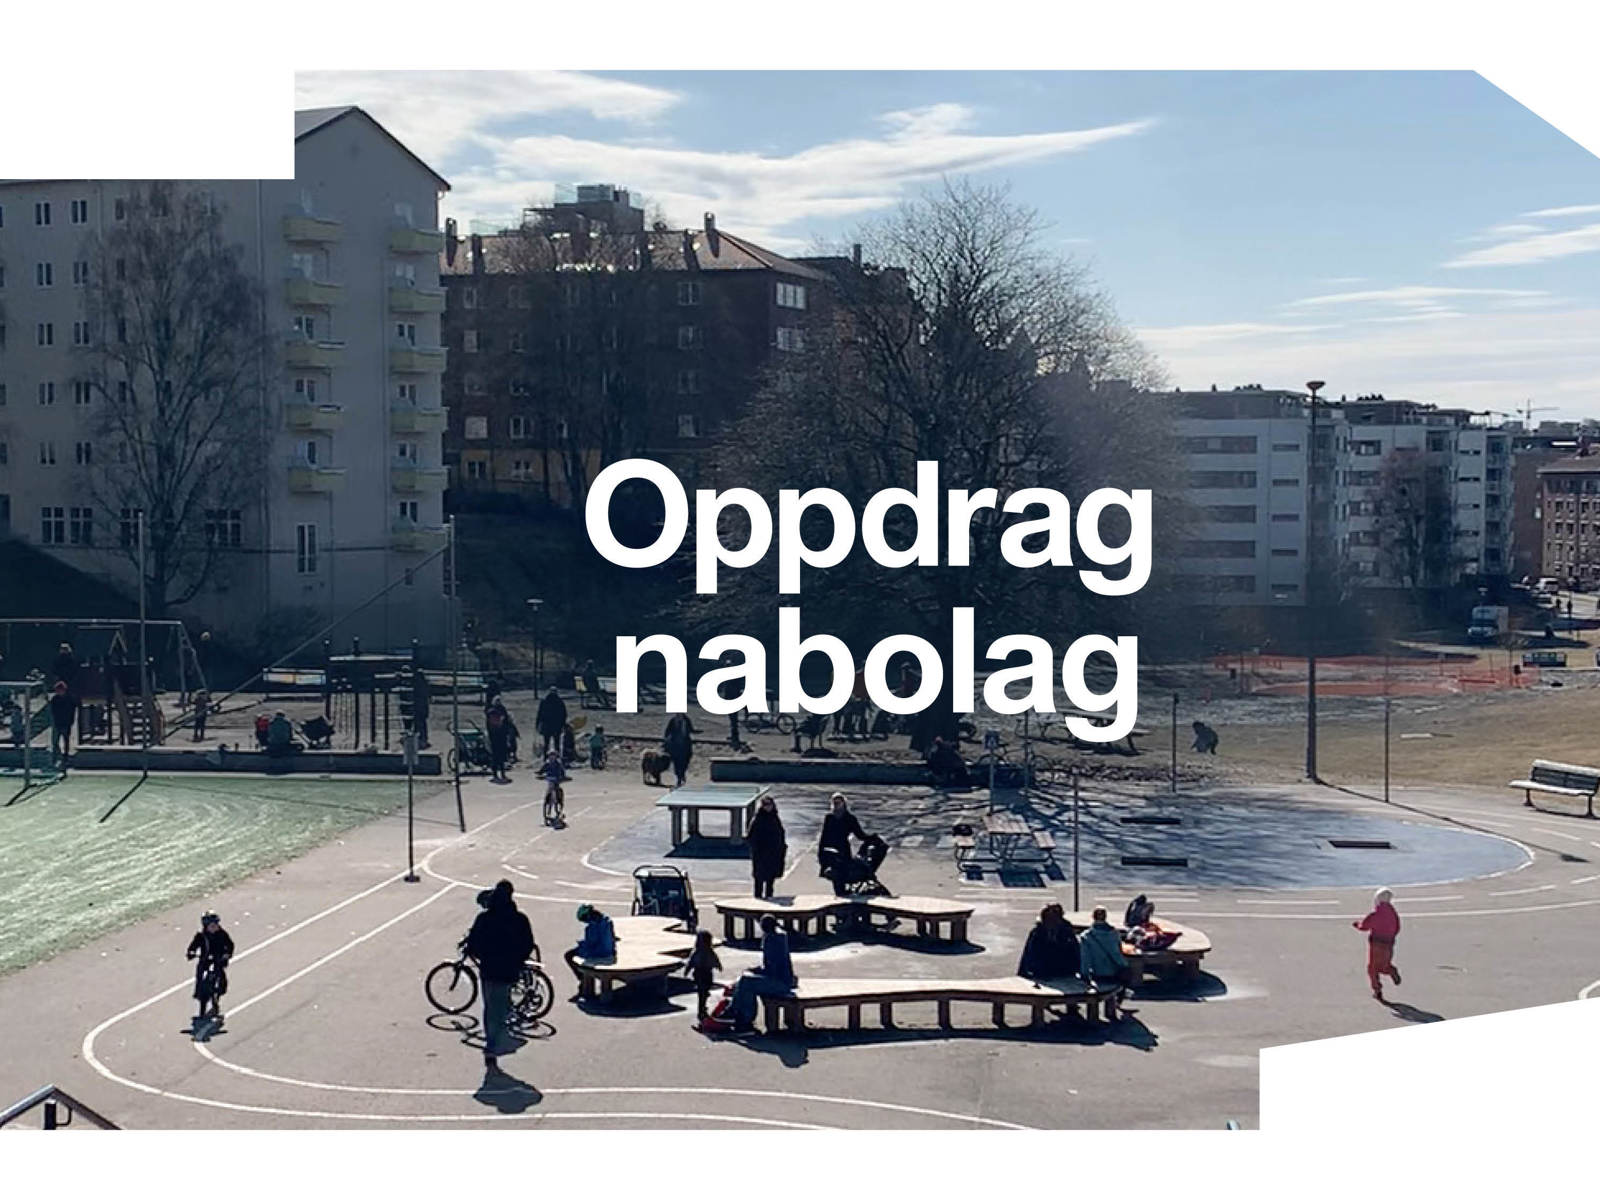 Plakat for Oslo arkitektur triennale der tittelen Oppdrag nabolag står over et bilde av offentlig byrom. Foto + tekst.